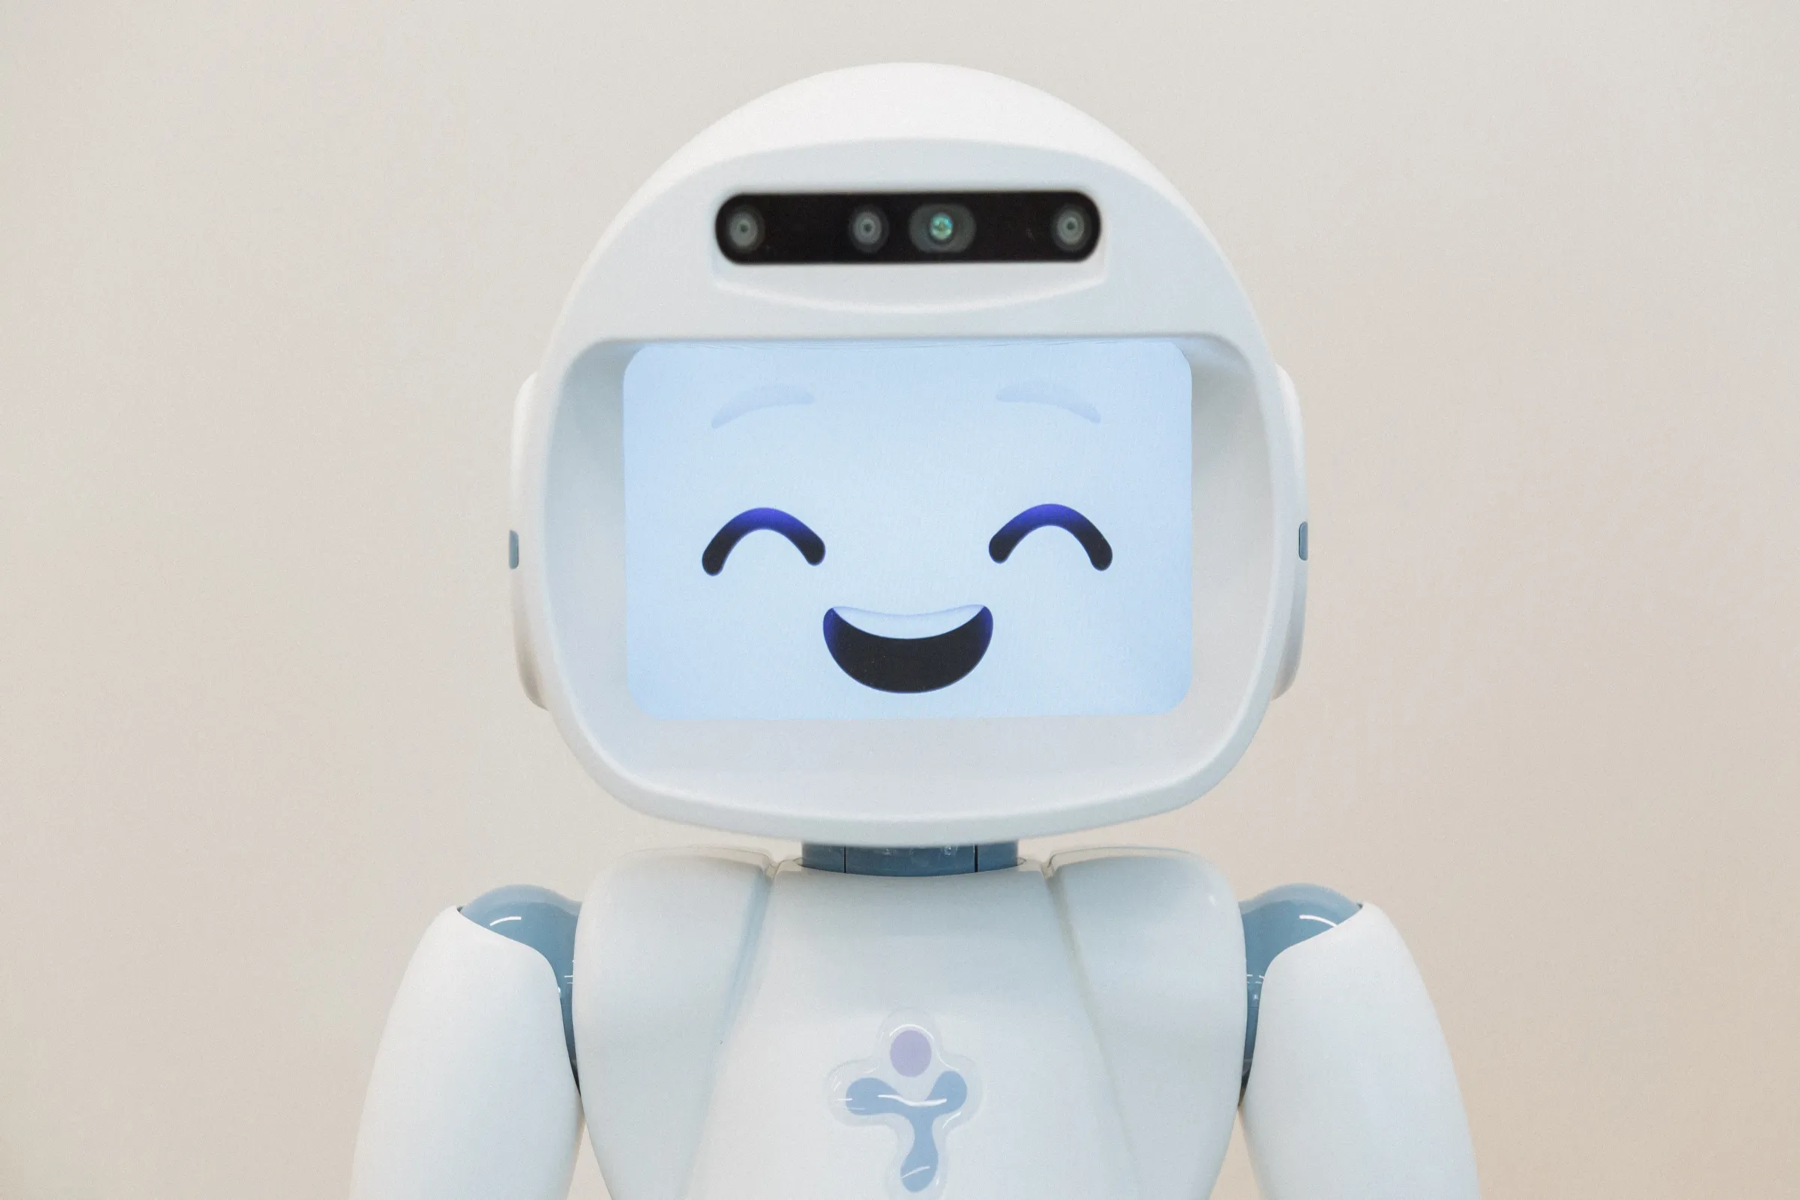 Ρομπότ βοήθεια: Ένα νέο ρομπότ σχεδιασμένο για να βοηθά άτομα με ήπια γνωστική εξασθένηση